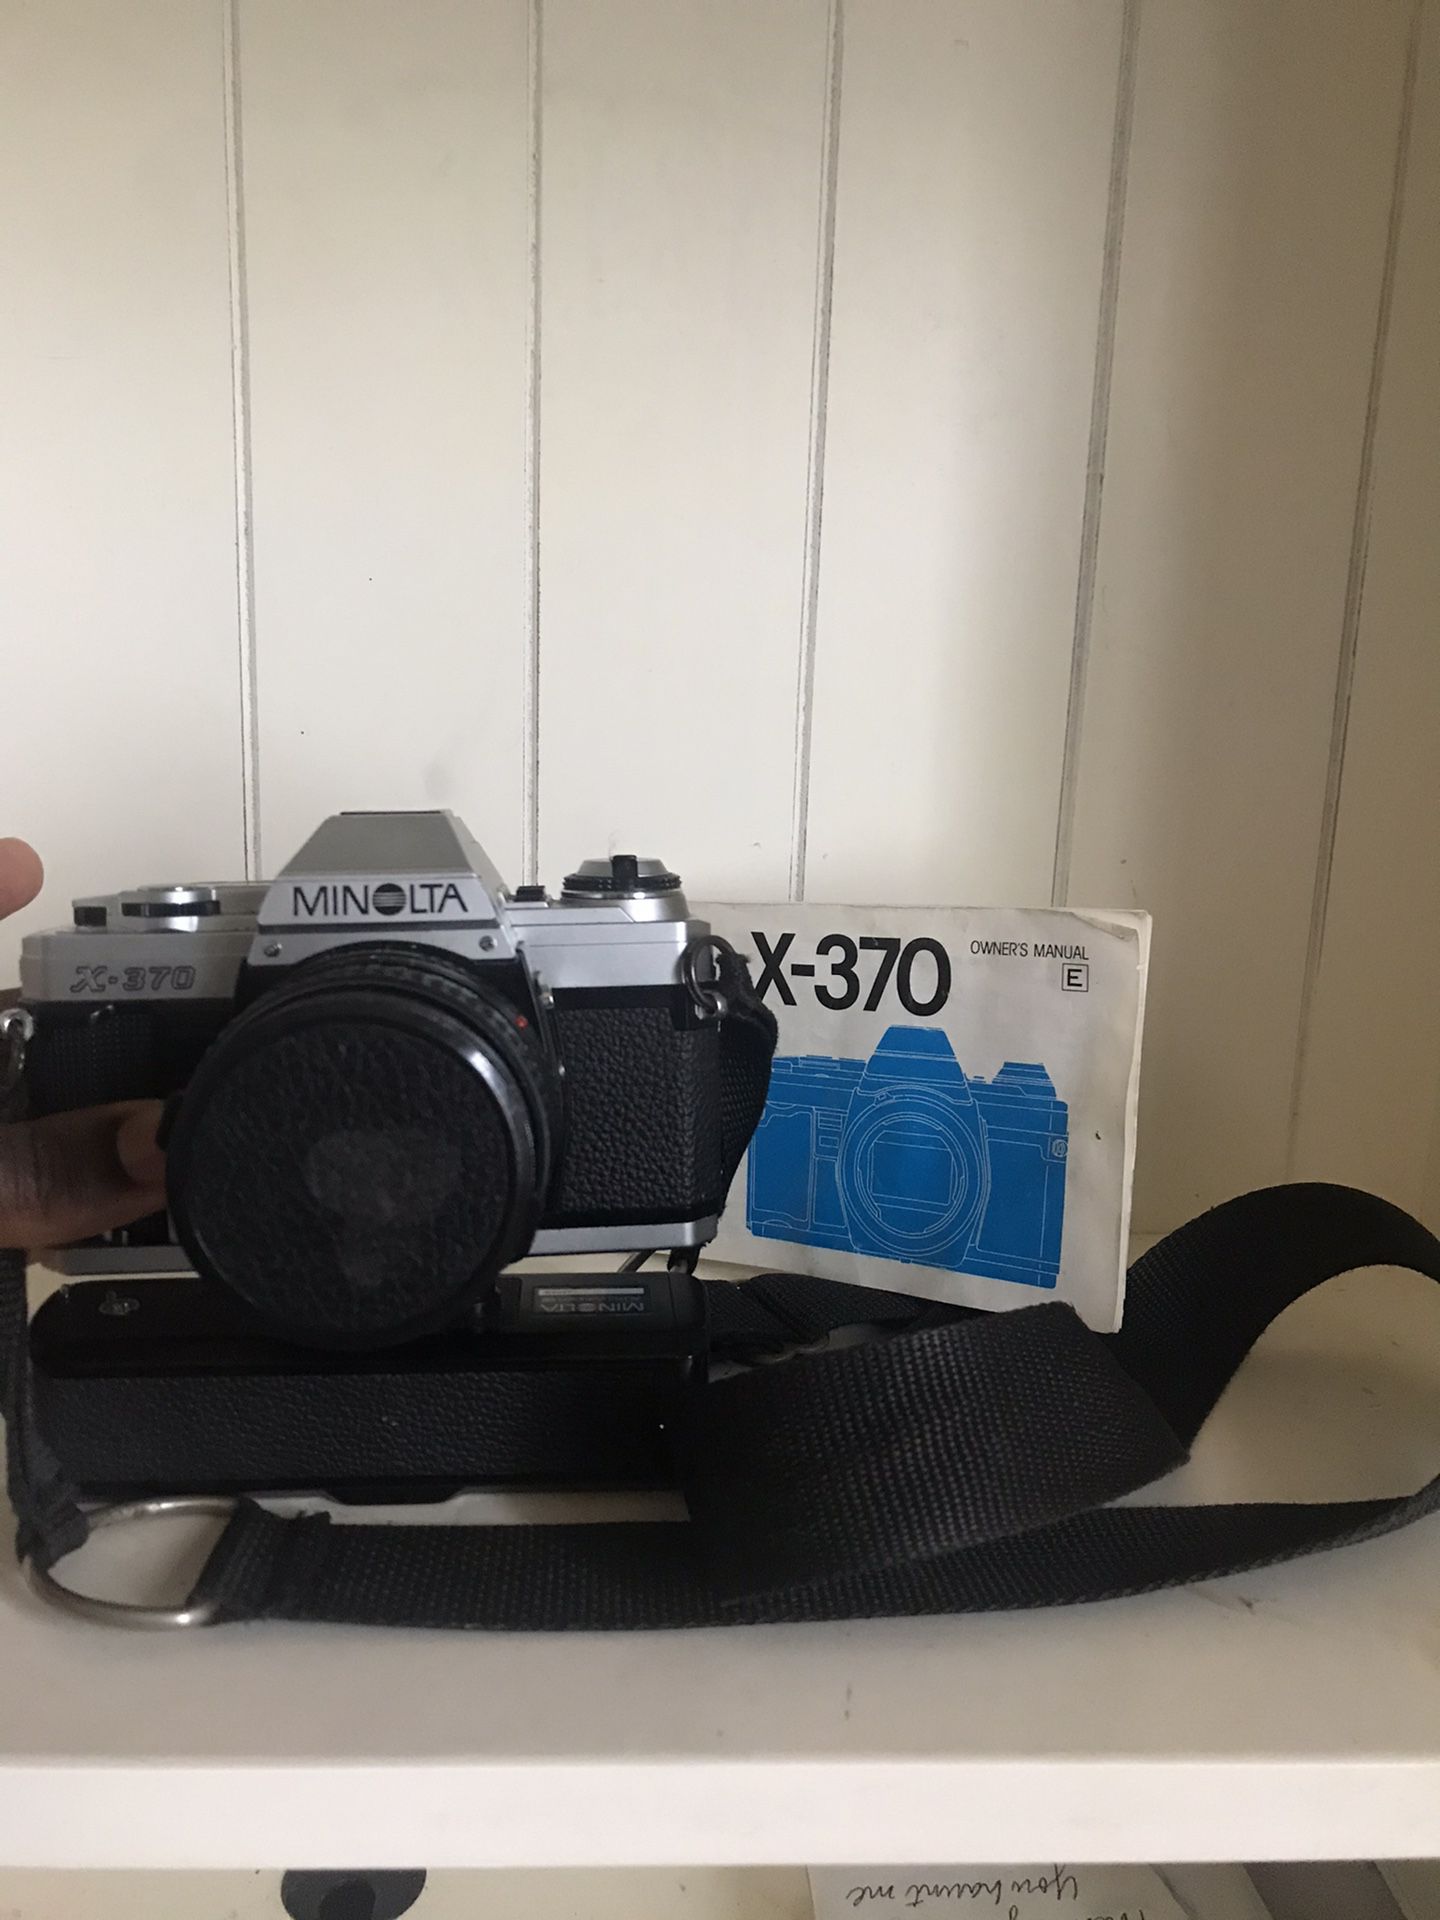 Clean Minolta X-370 35mm Film Camera